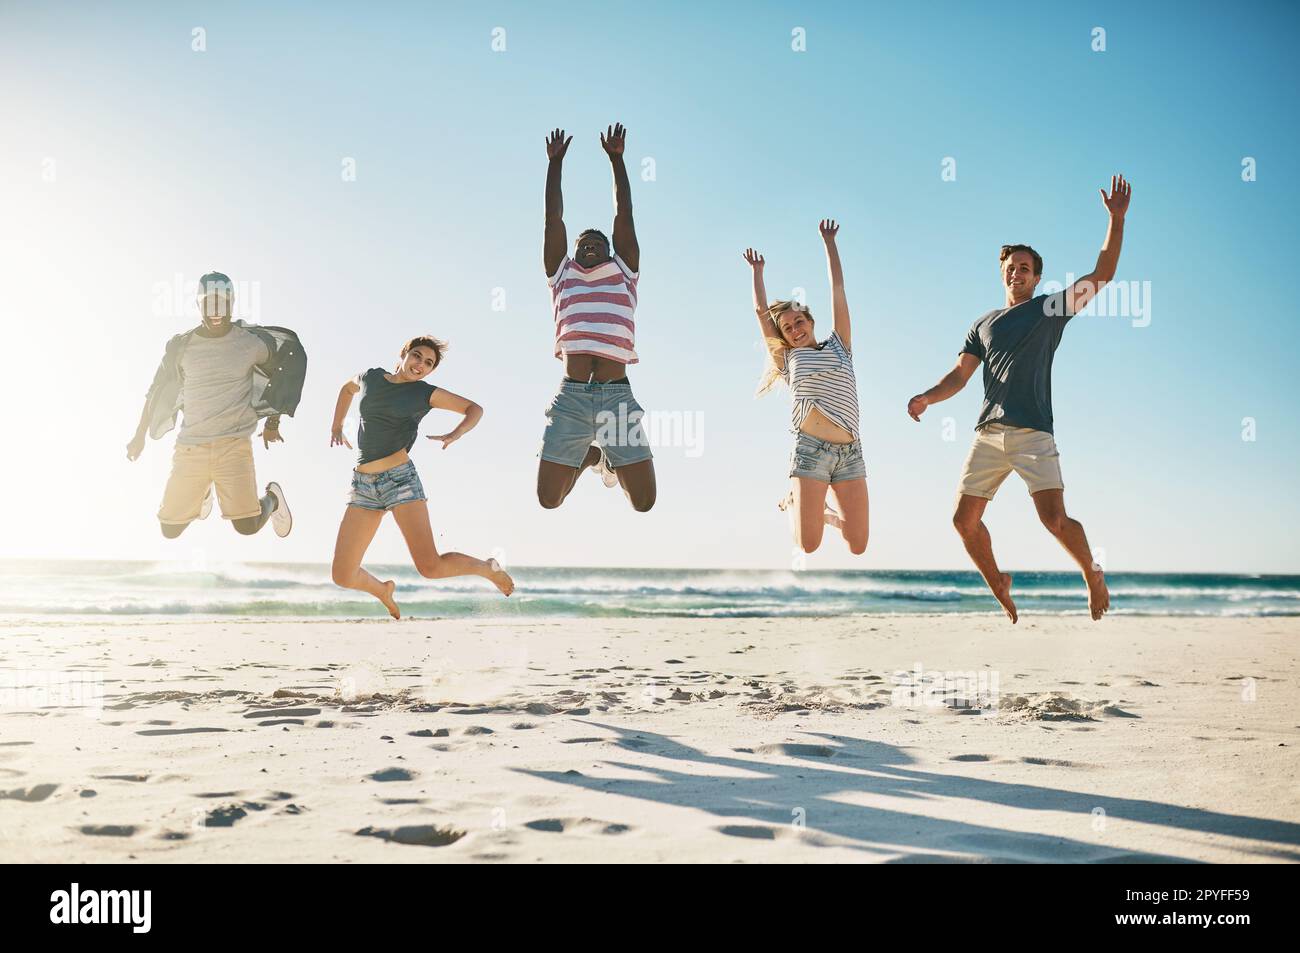 Woop Woop Summer break est là. un groupe de jeunes amis sautant avec enthousiasme dans les airs à la plage. Banque D'Images